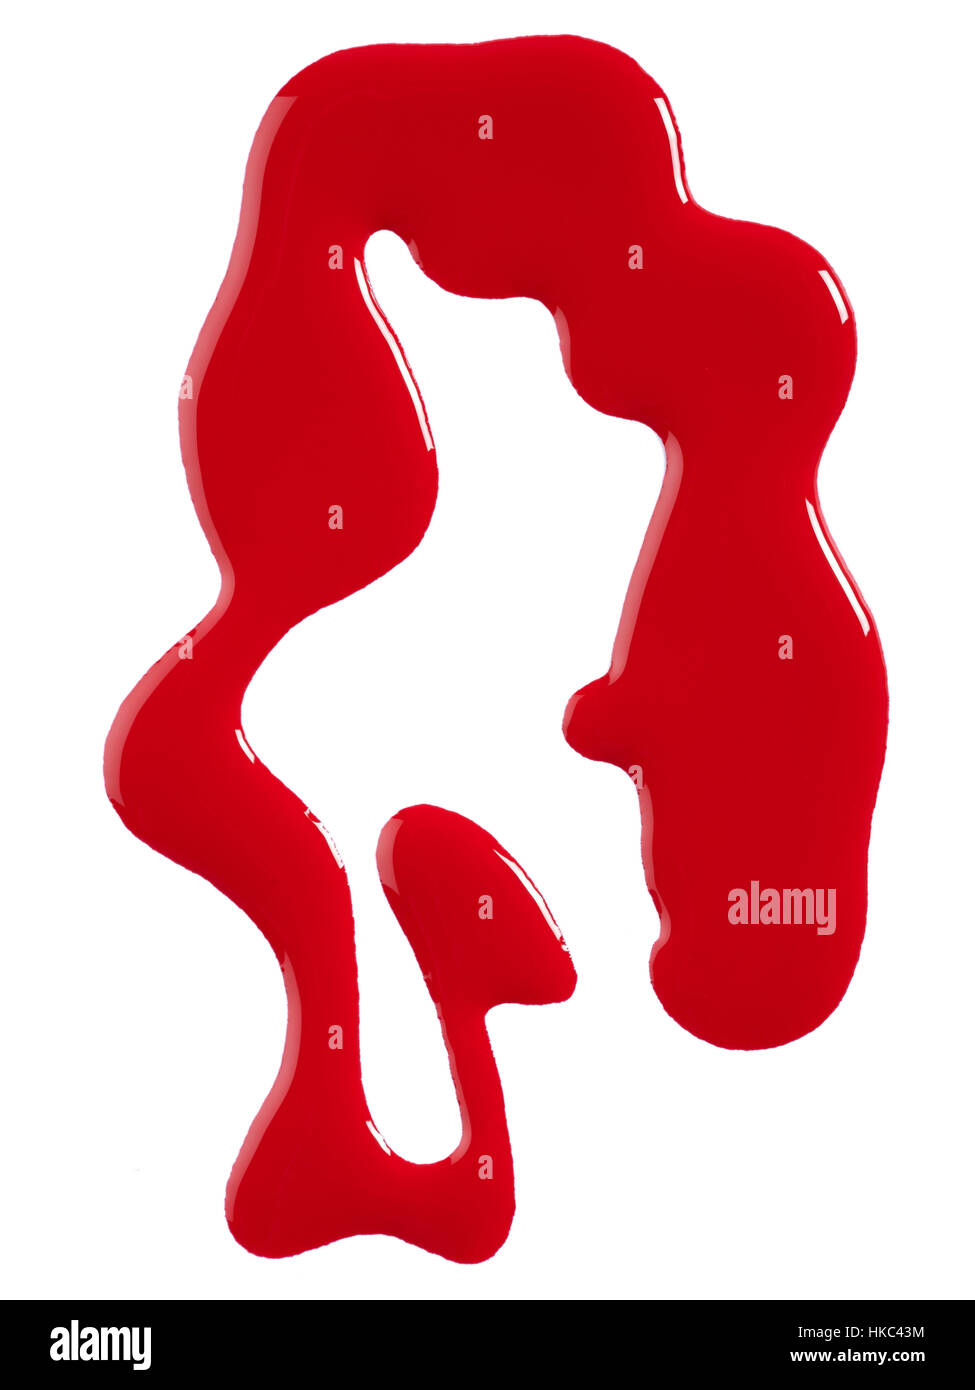 Eine Schönheit Cut-out Bild einer Stichprobe von rotem Nagellack oder Lack. Stockfoto